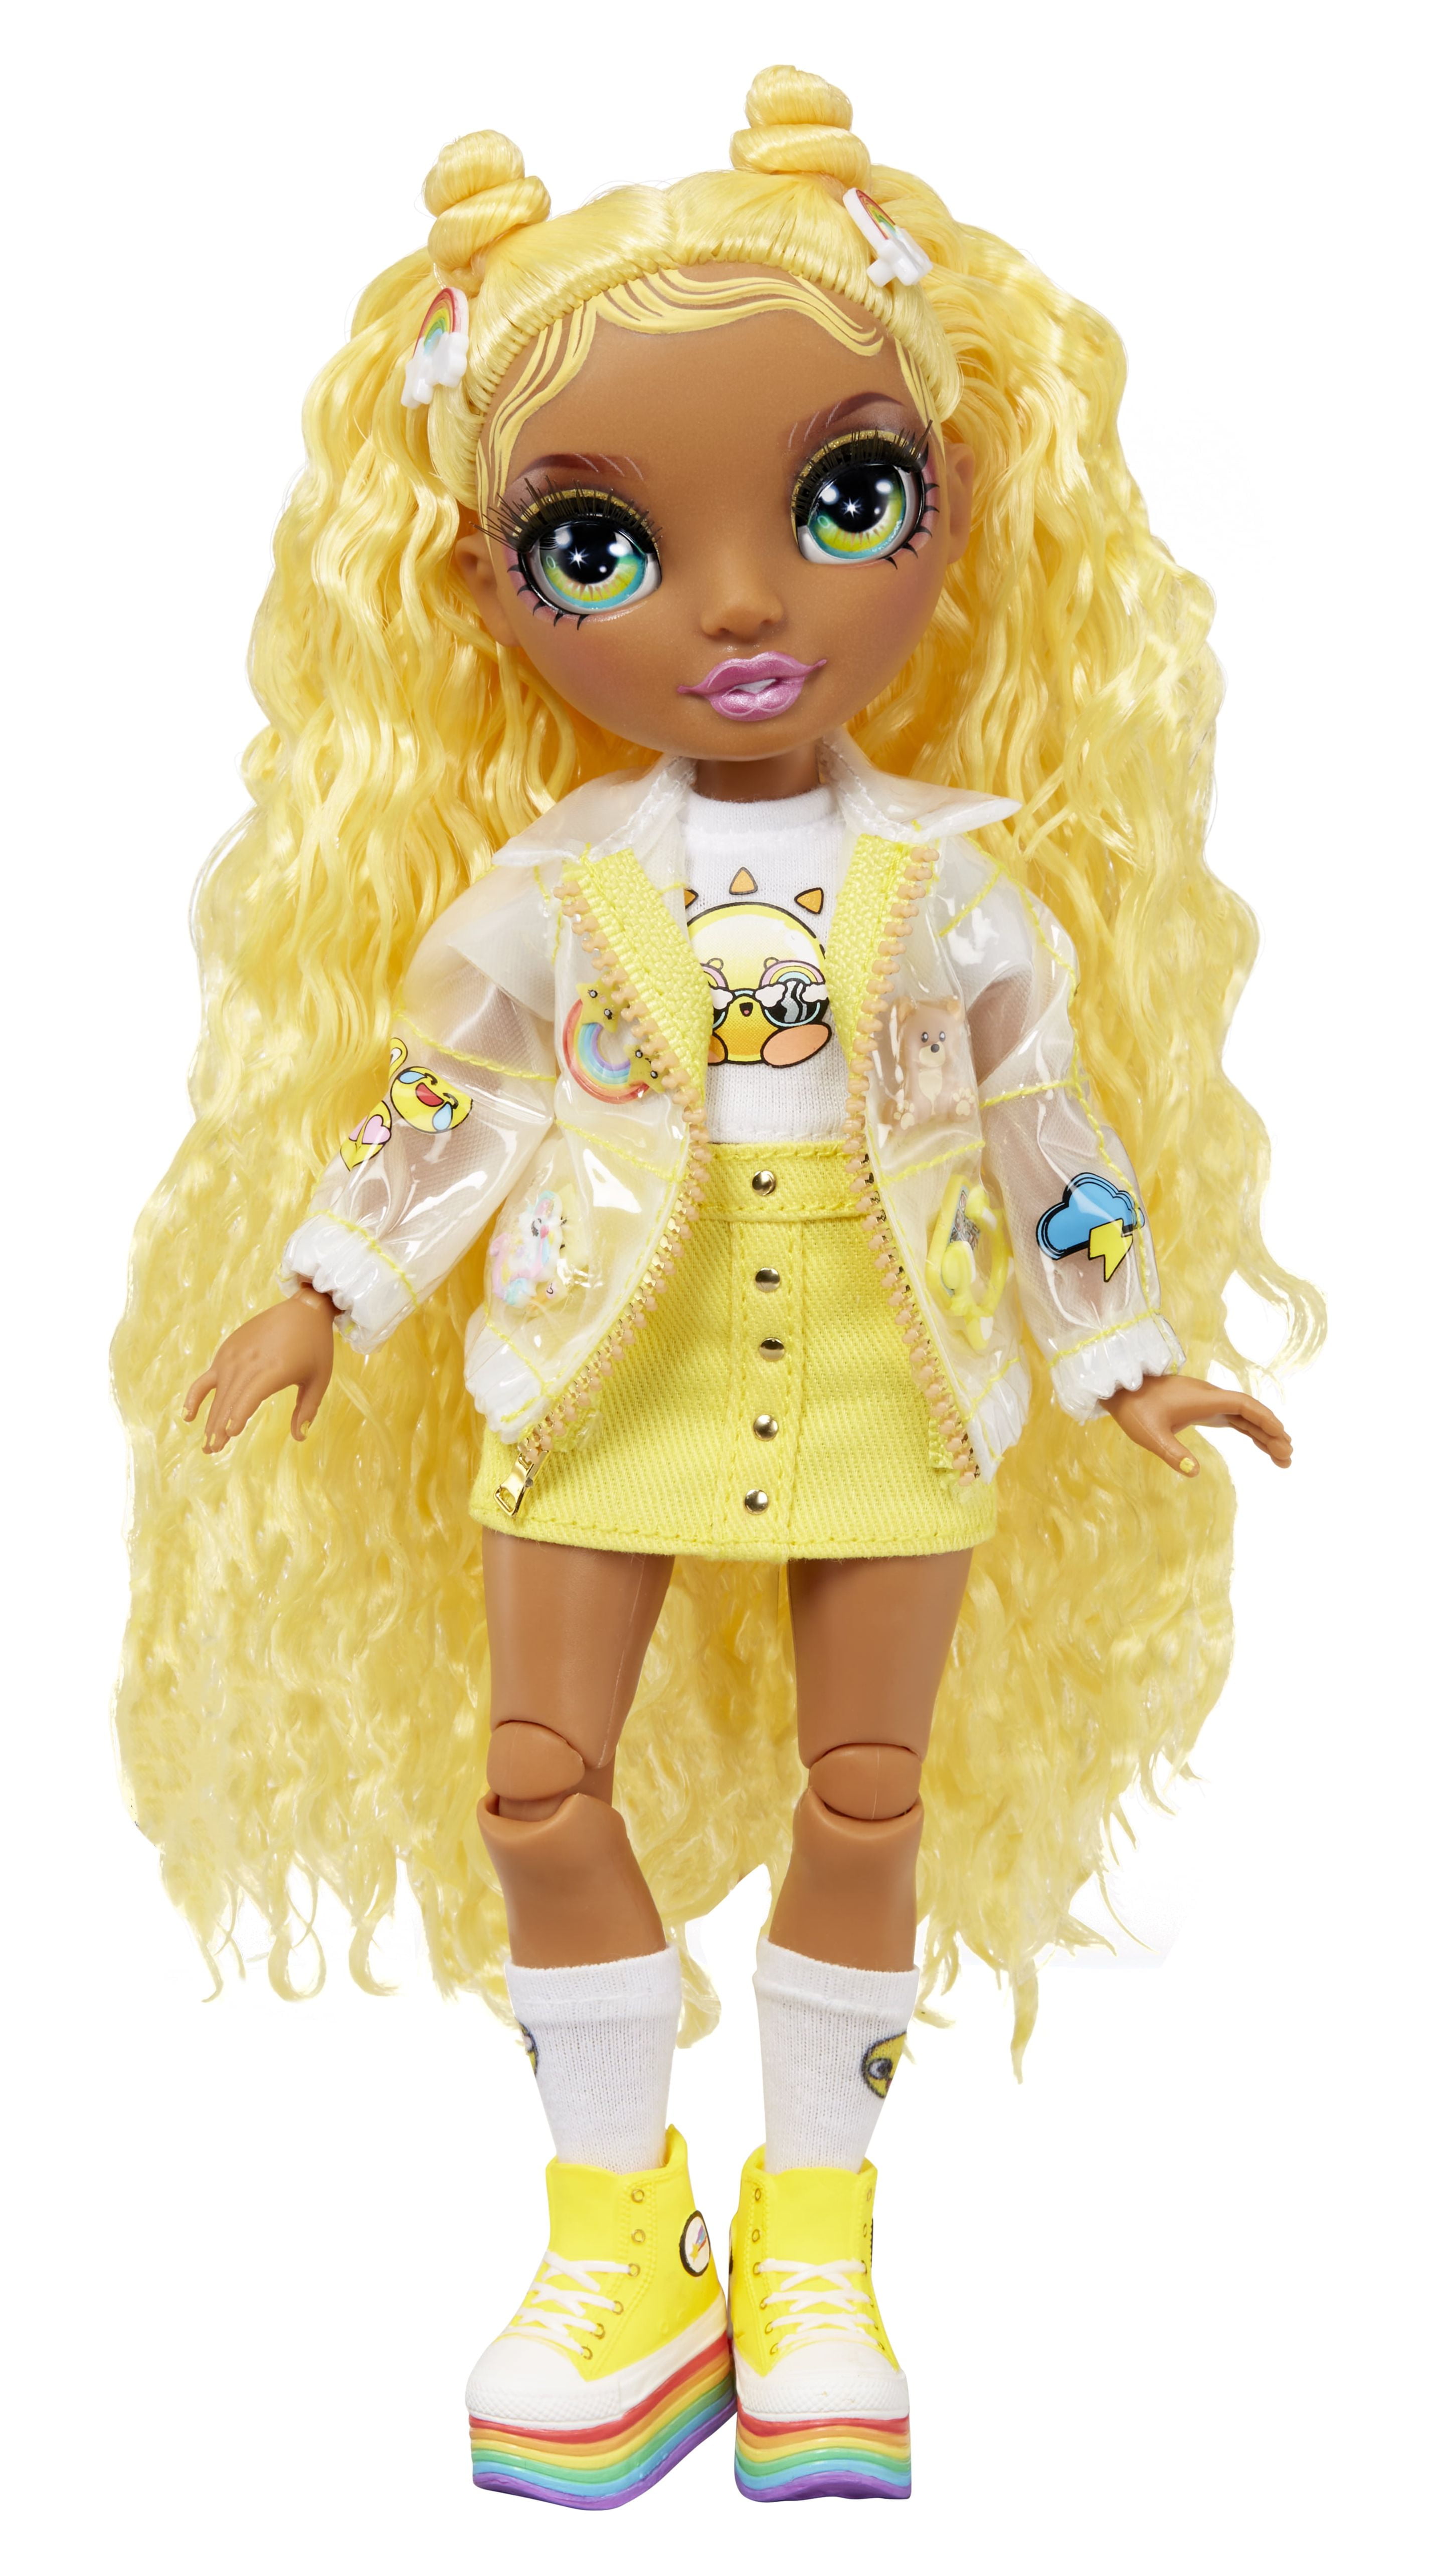 Toy Rainbow High Fantastic Fashion Doll- Sunny (yellow)